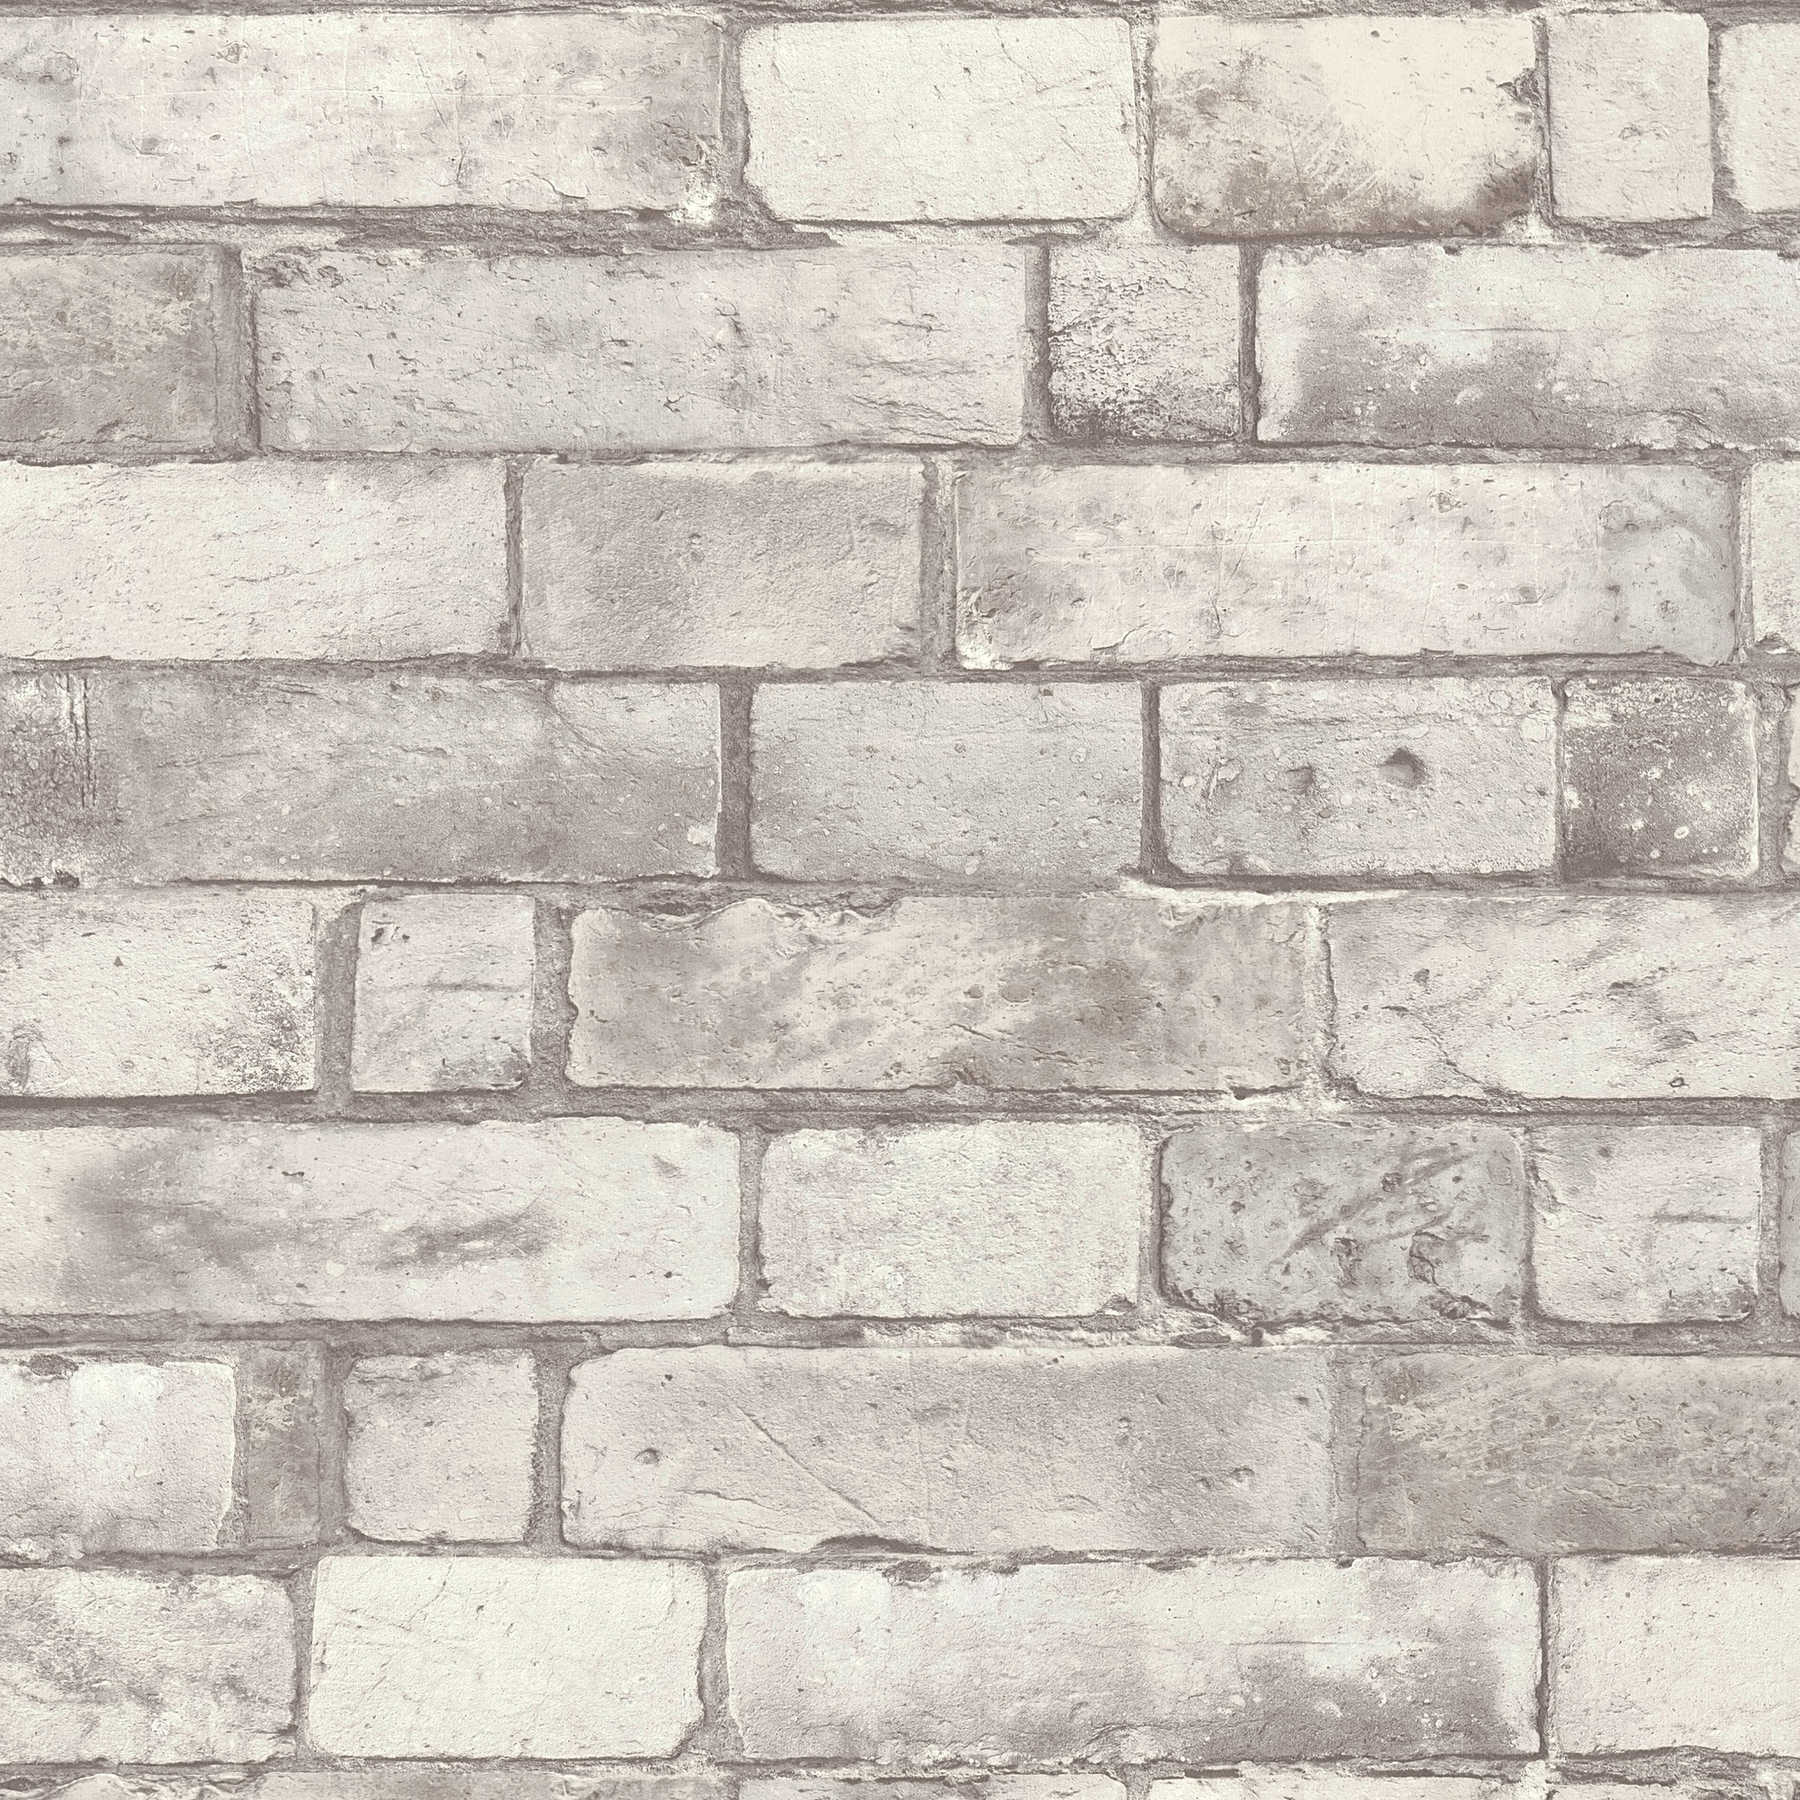             Vliesbehang bakstenen muur in 3D design - grijs, wit
        